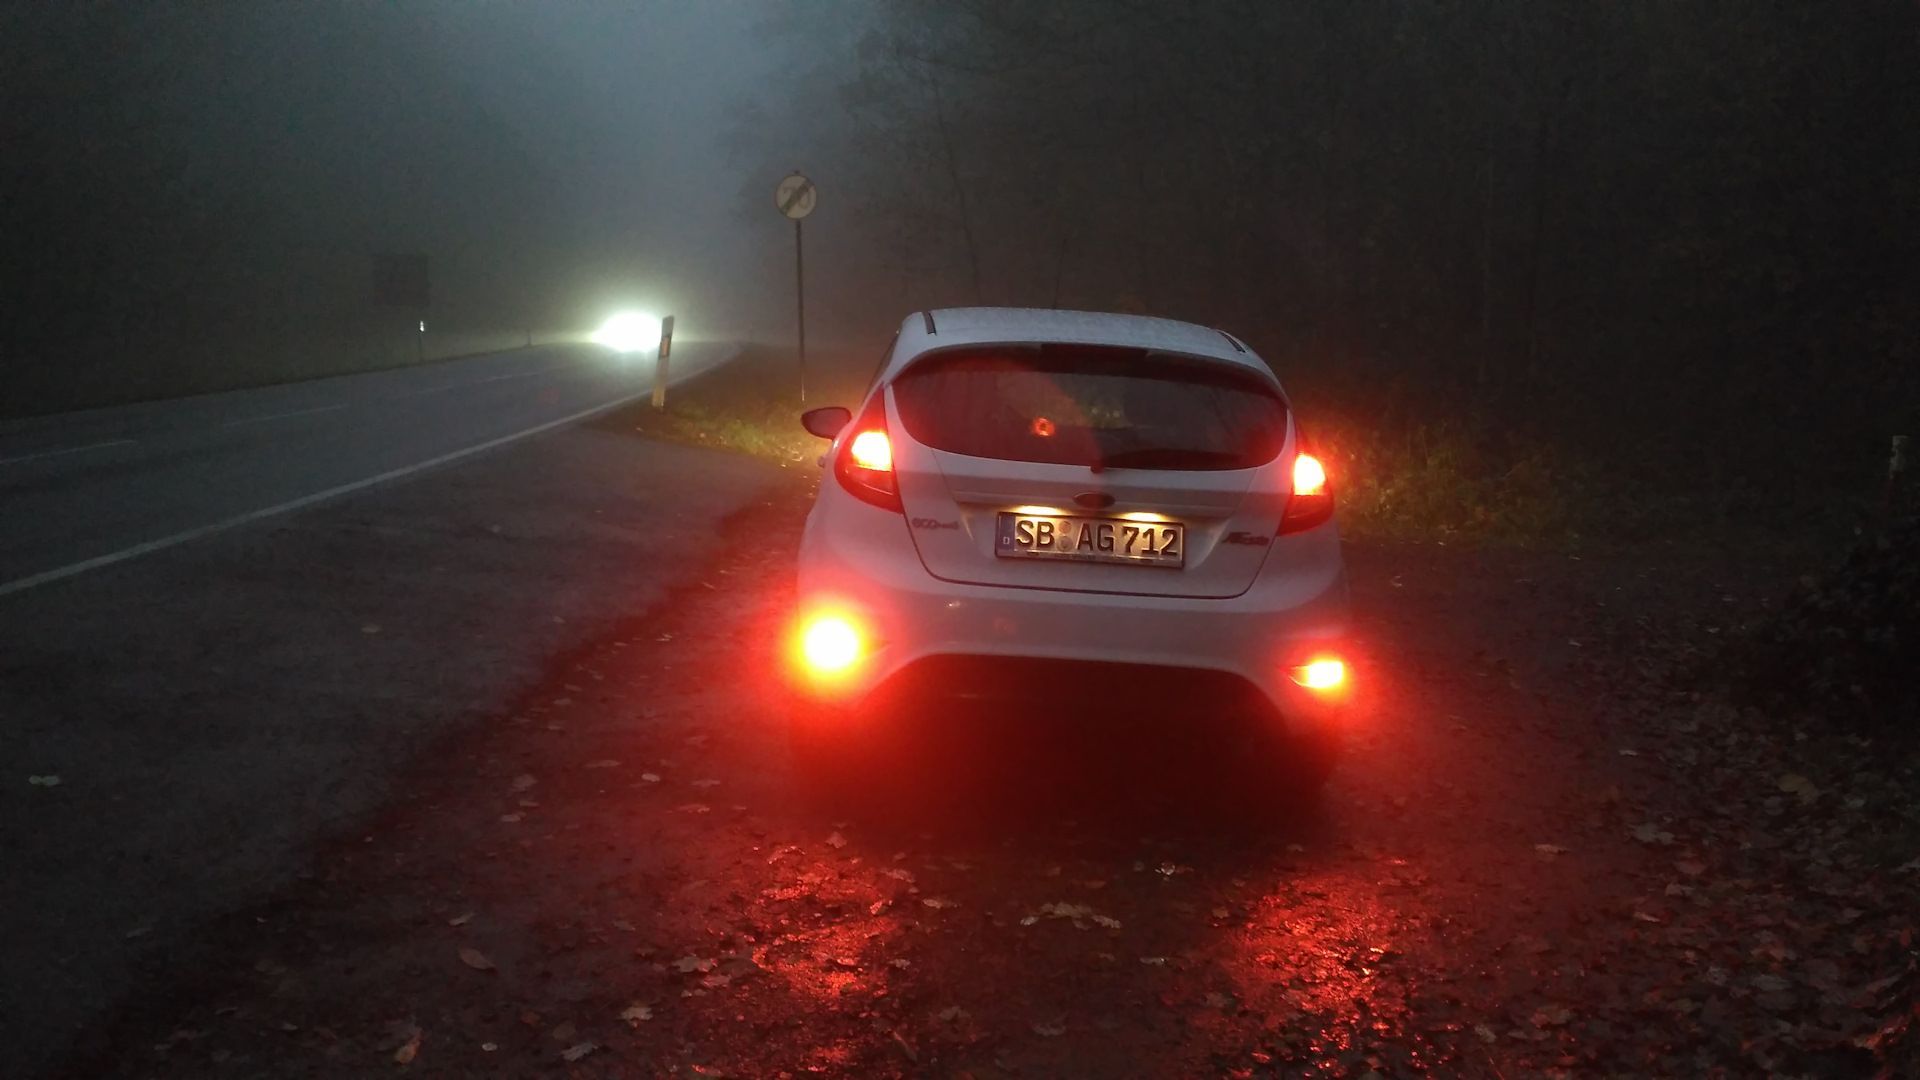 Свет фар фар фар фонарей. Ford Fiesta противотуманки задние. Задняя противотуманная фара в тумане Солярис. Свет противотуманных фар Джентра 2013. Противотуманныйый фонари на машине.